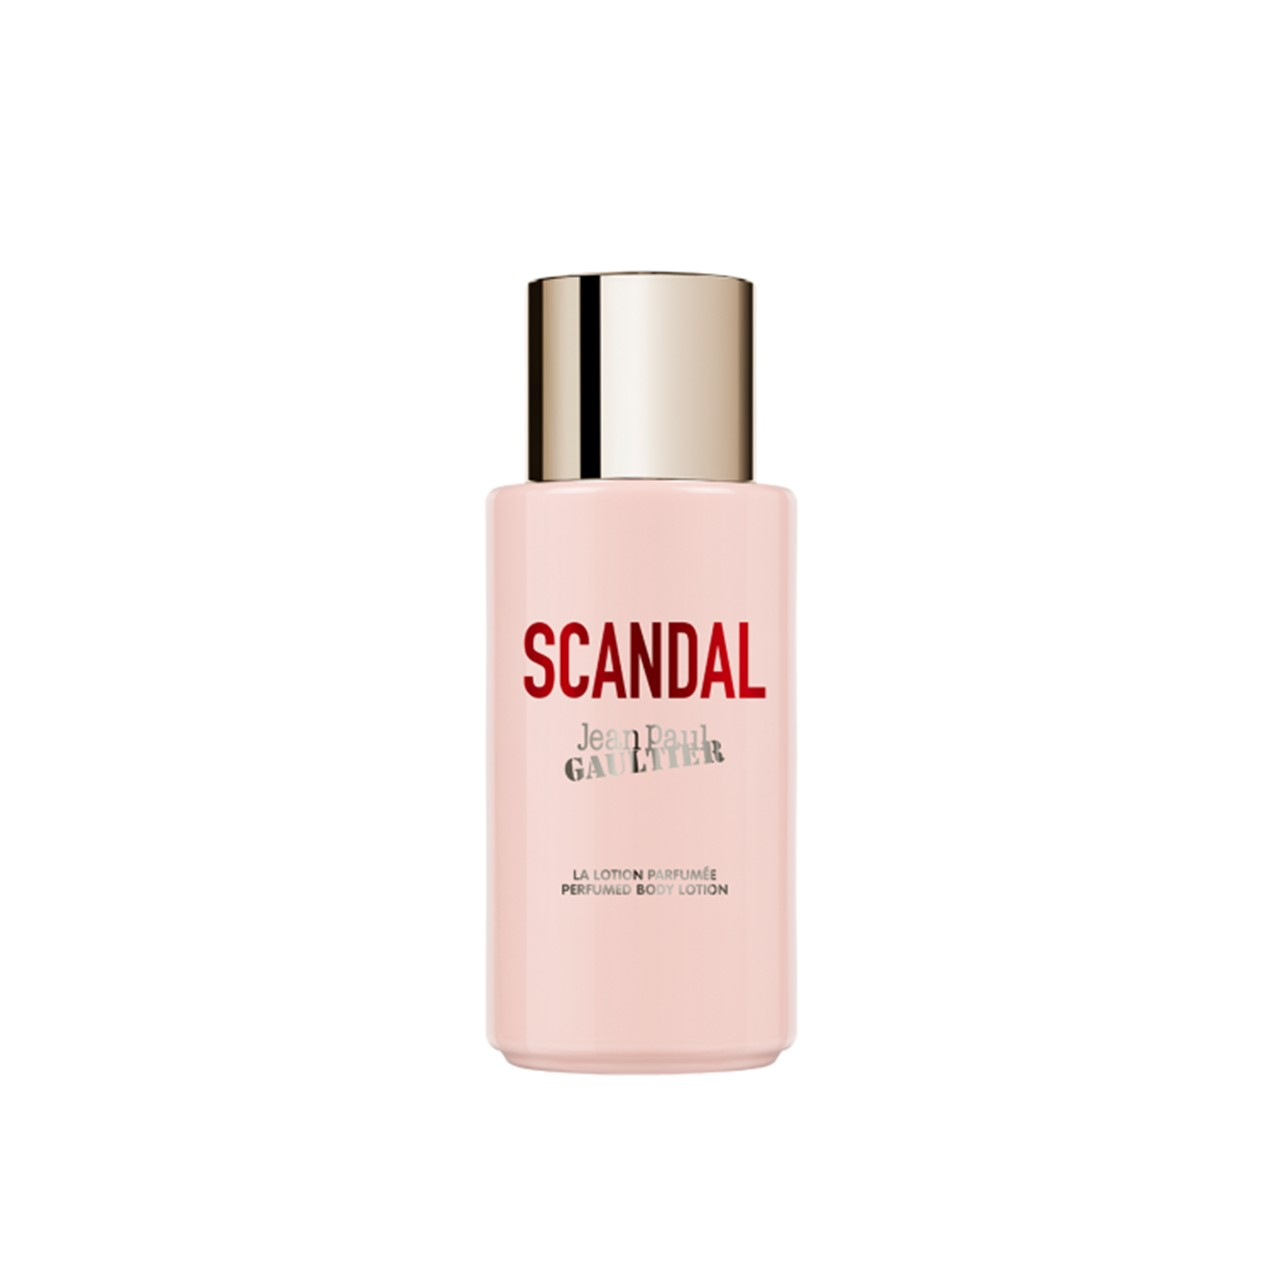 Jean Paul Gaultier Scandal Perfumed Body Lotion 200ml (6.76fl oz)